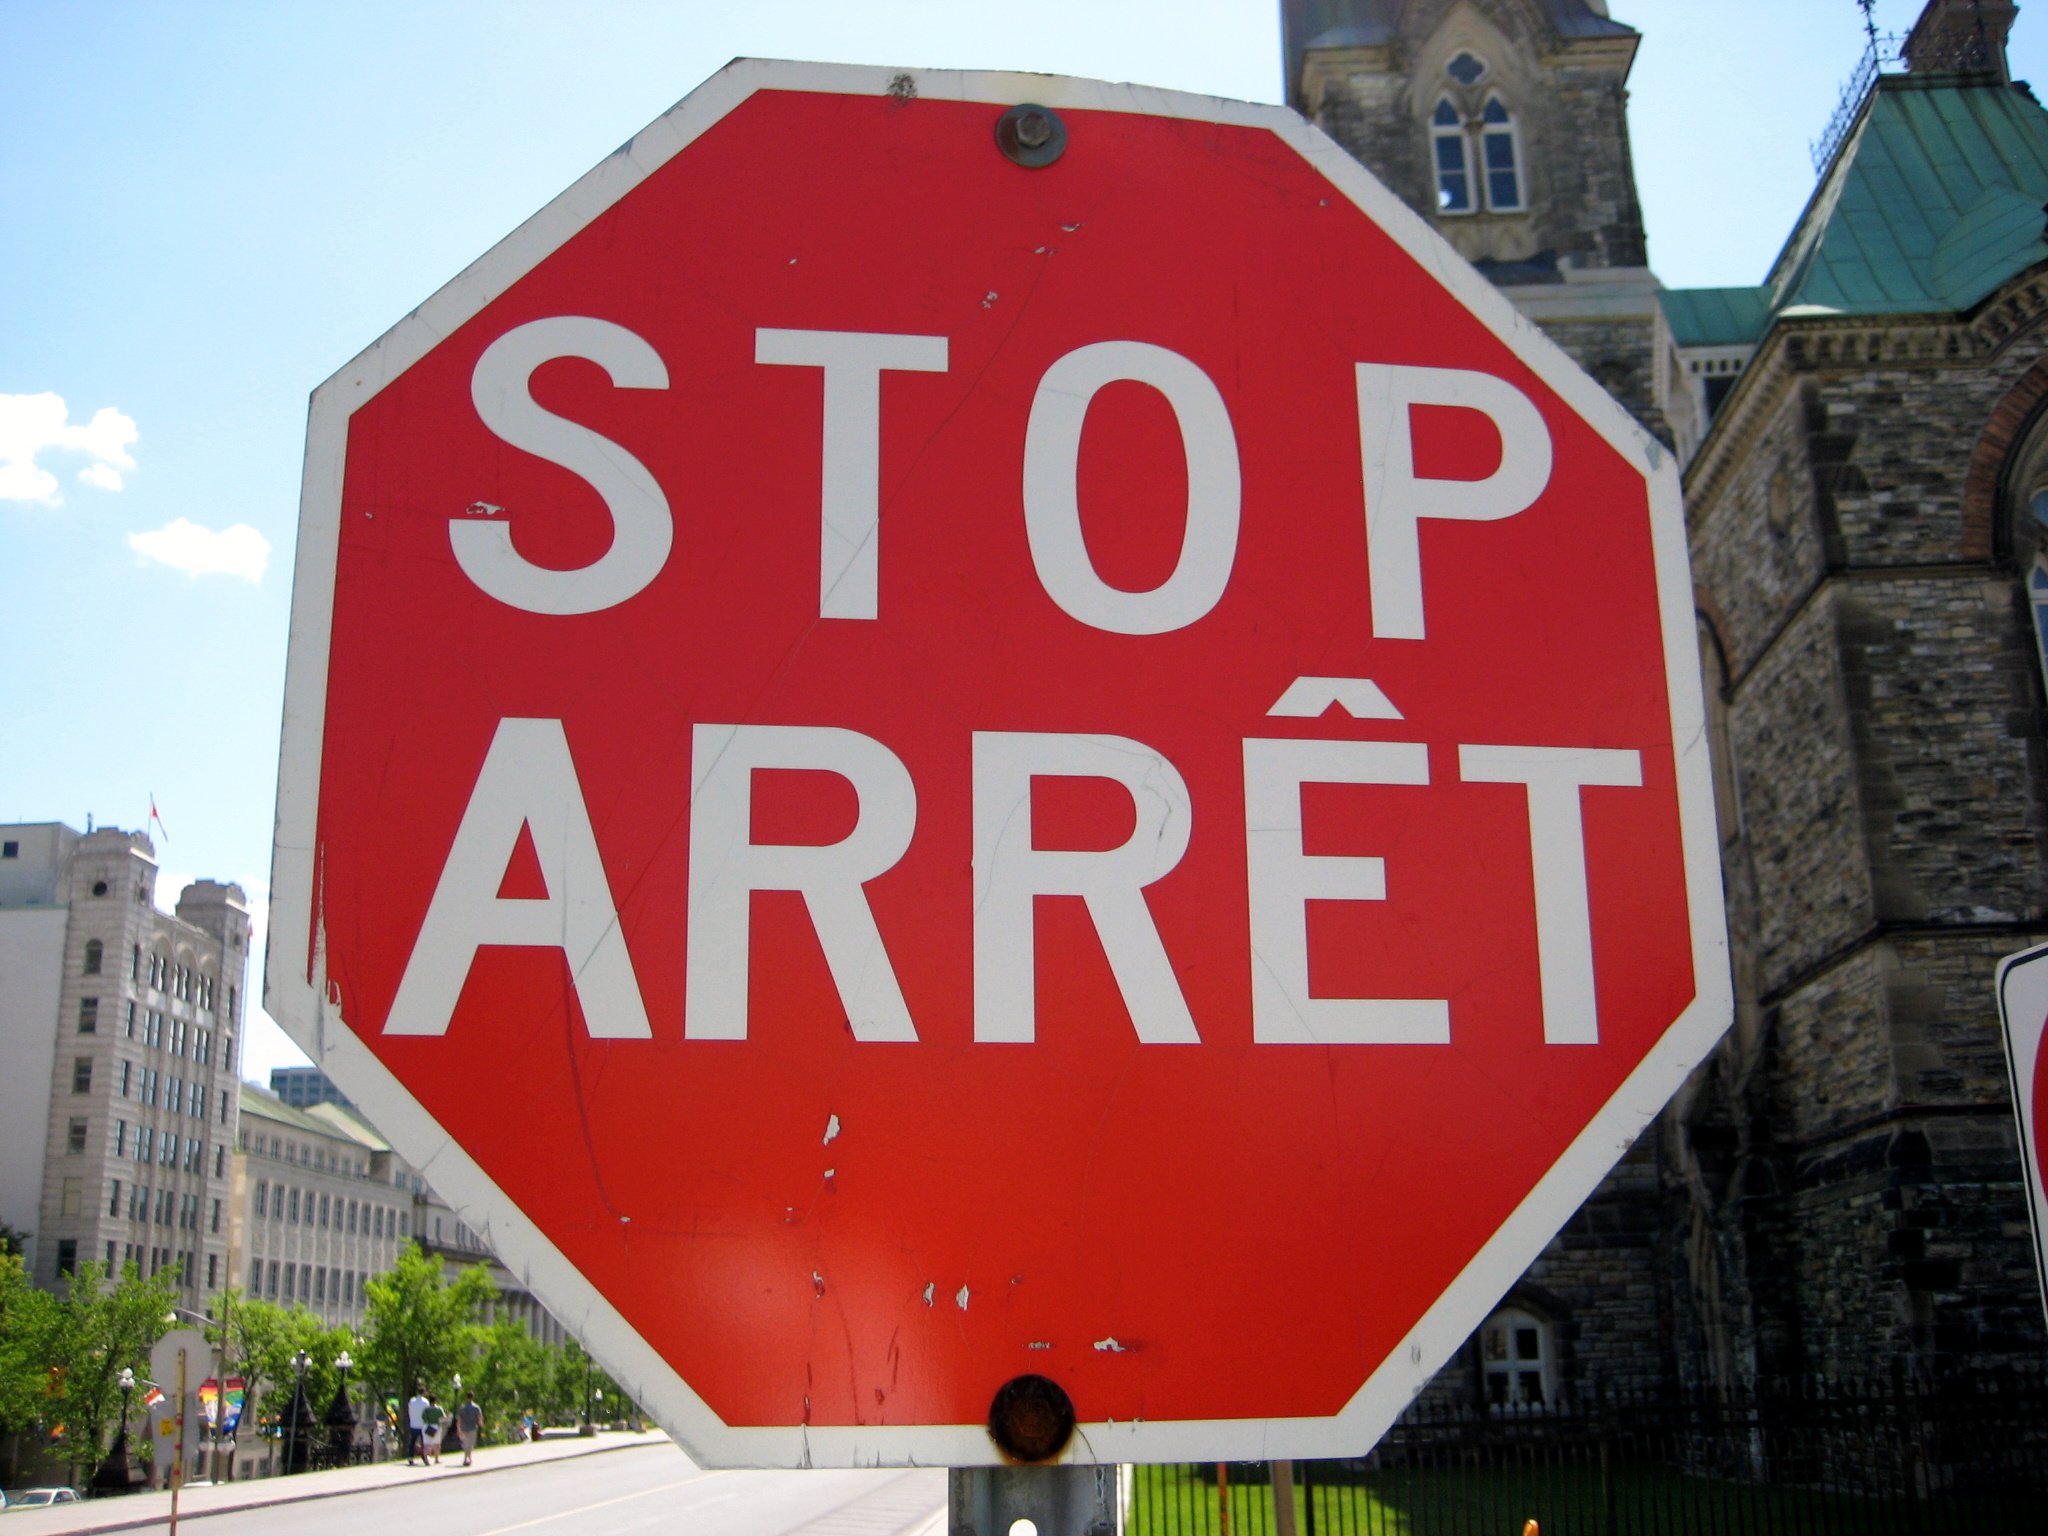 Stopp-Schild zweisprachig